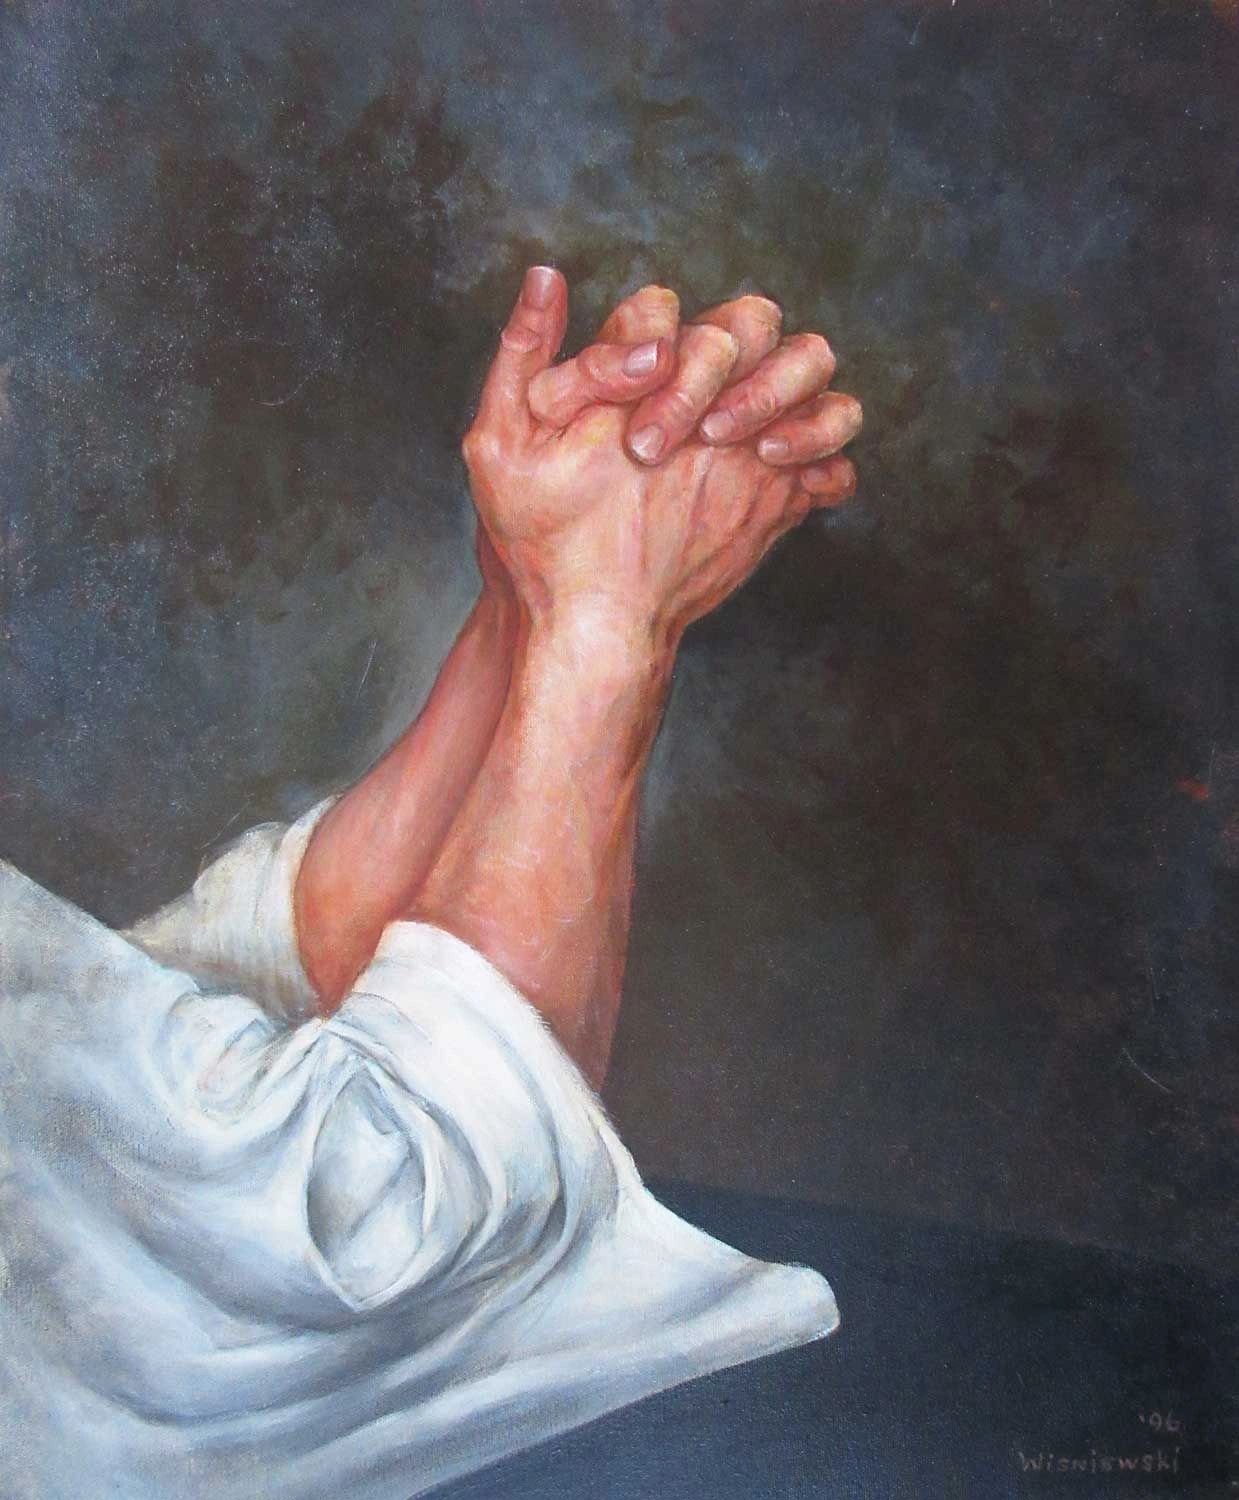 Praying hands. Acrylic painting by Stan Wisniewski.